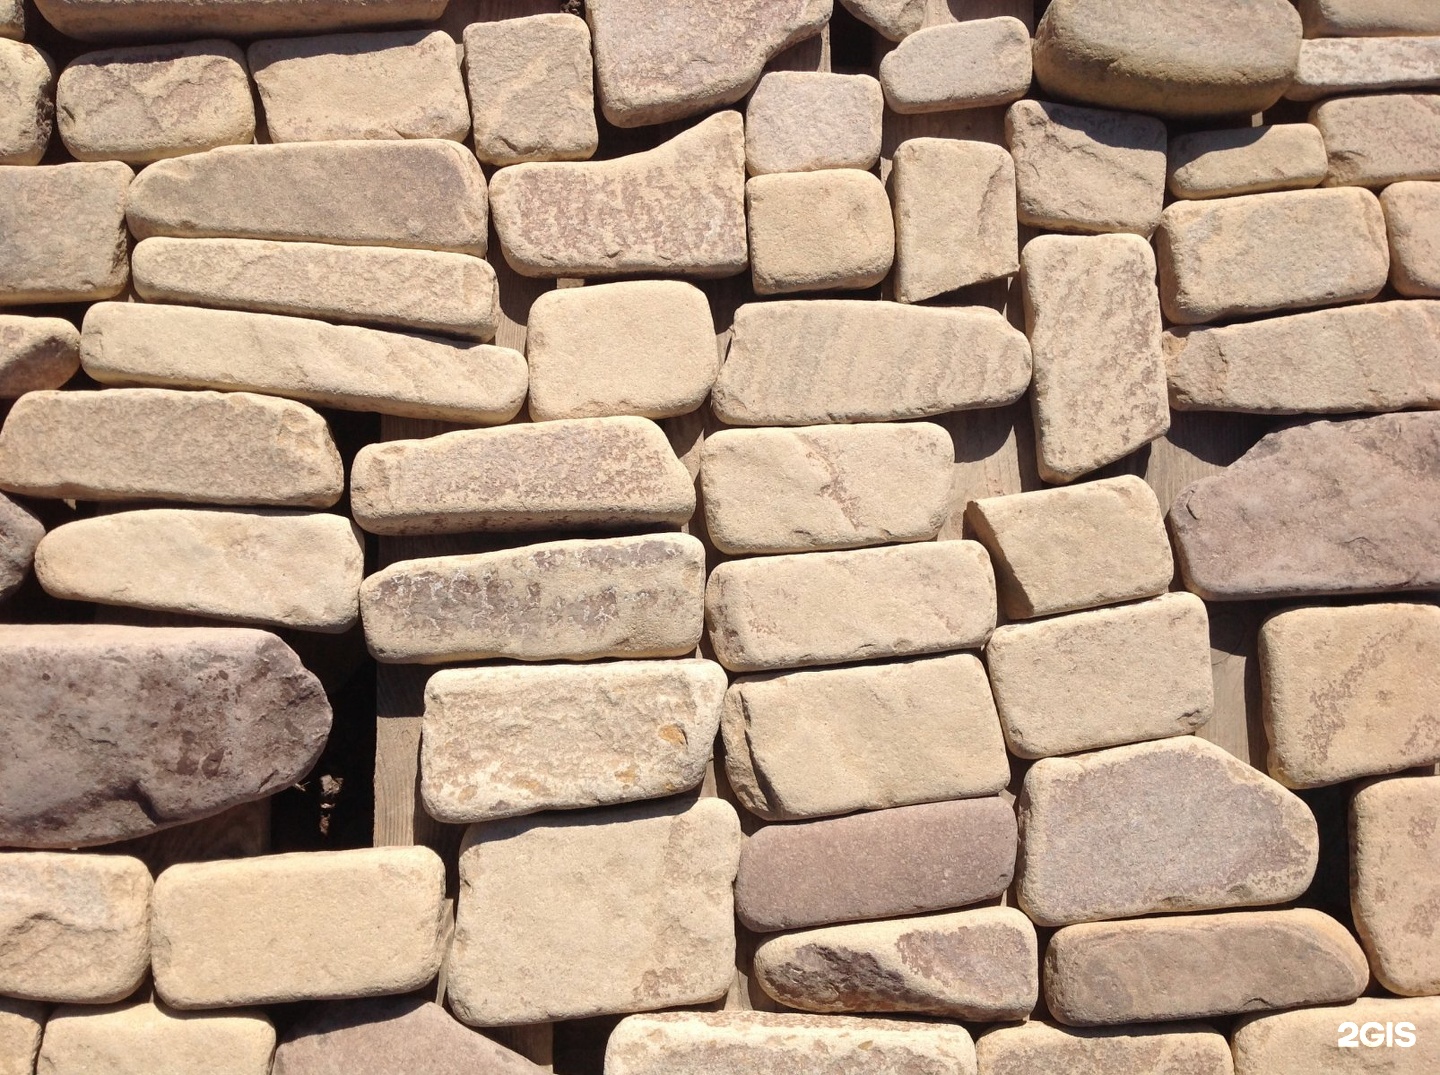 Купить камень саратов. Камень строительный материал. Камень для стройки. Природные камни строительные. Каменные природные строительные материалы.